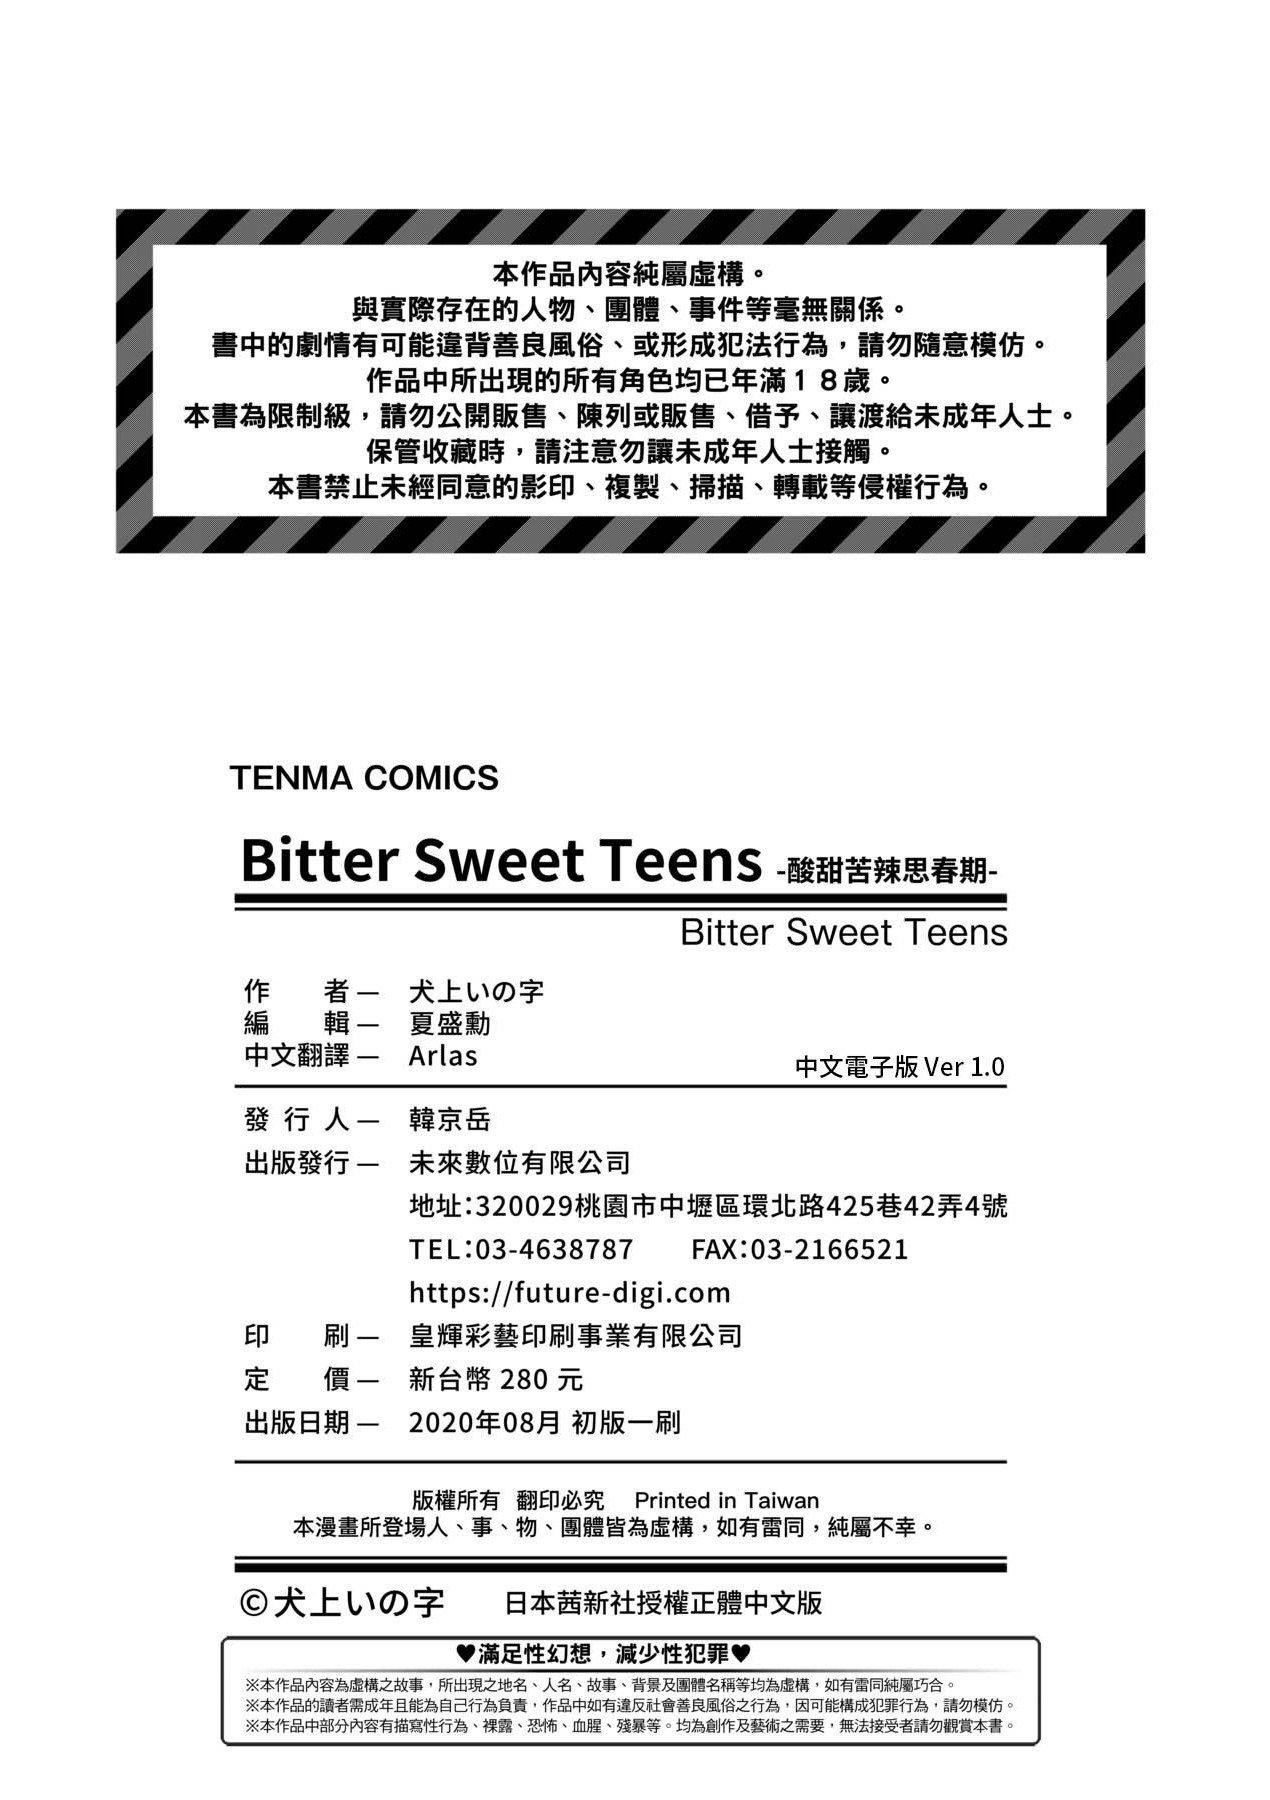 [未來數位] [犬上いの字] Bitter Sweet Teens -酸甜苦辣思春期-213.jpg